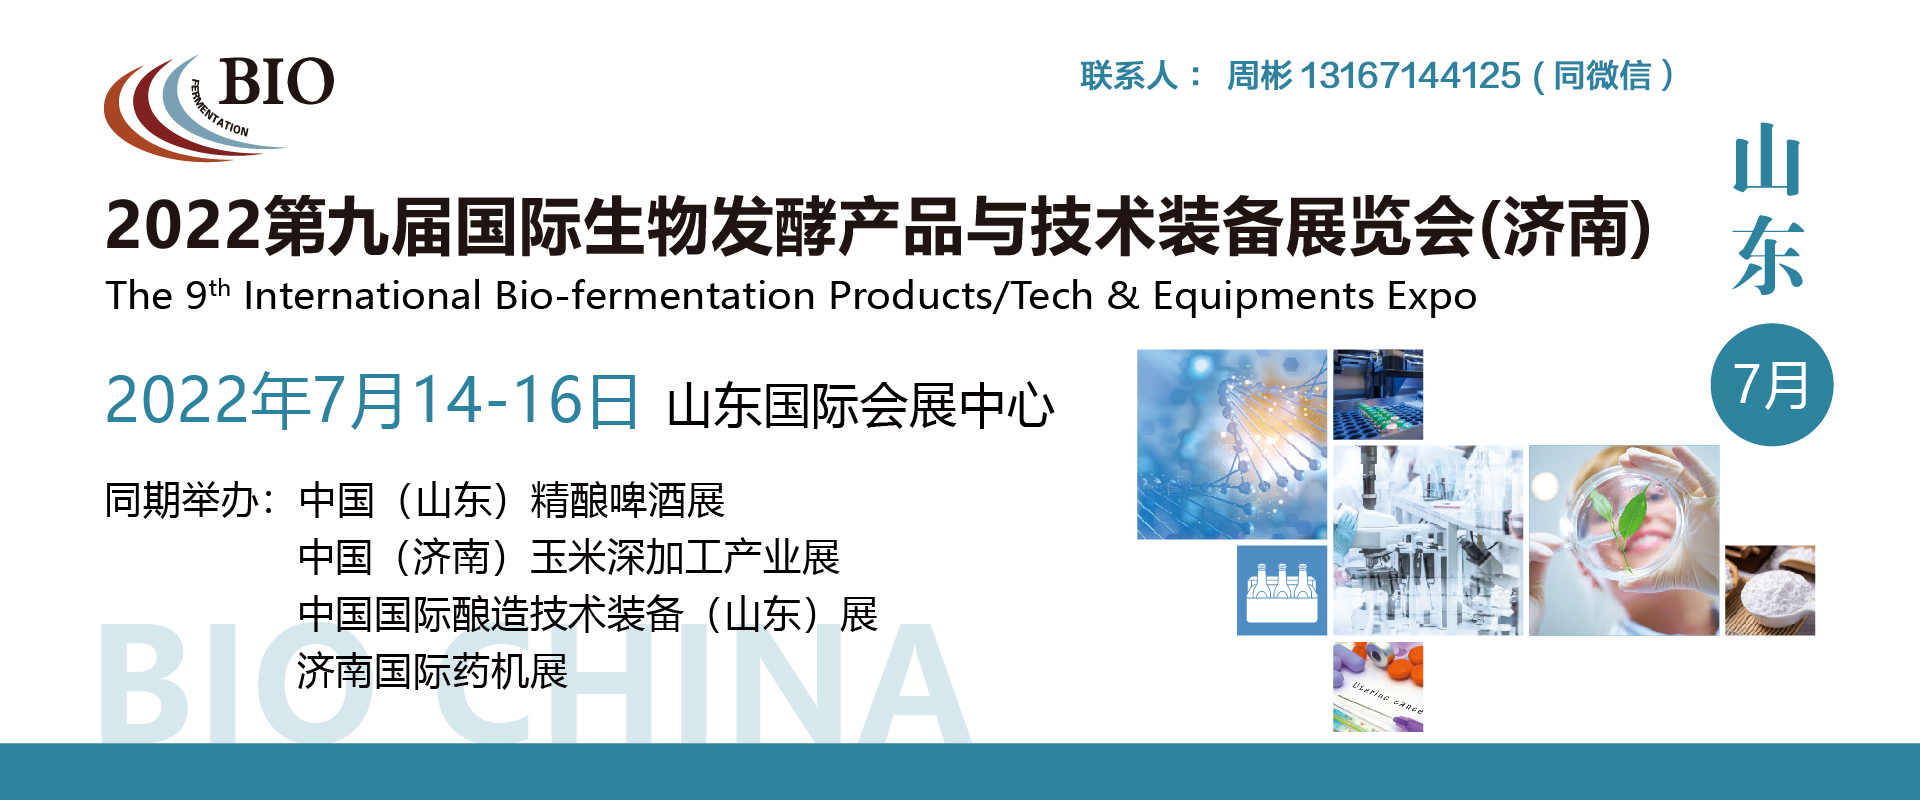 喜讯-济南会展首个大型“生物发酵技术产业盛会”将在7月14-16日召开